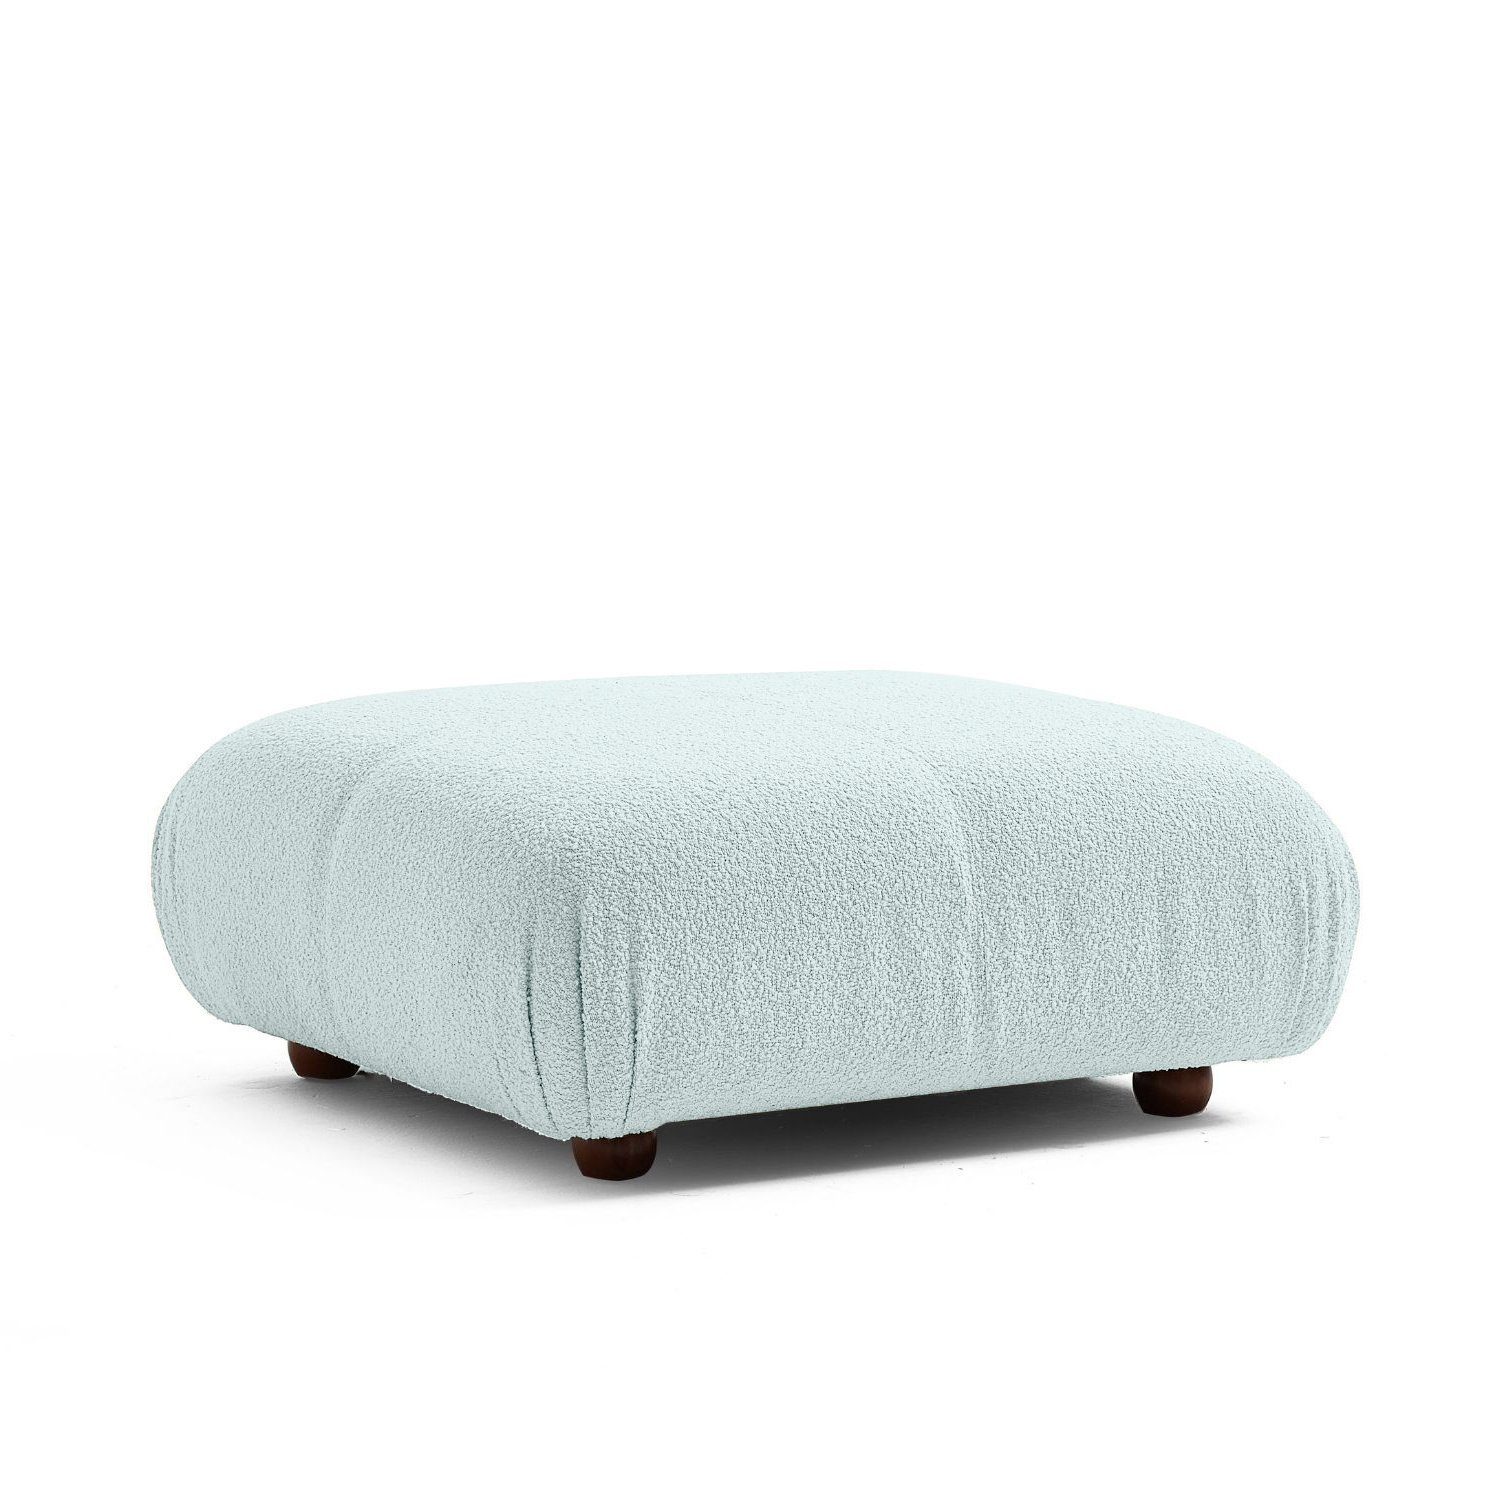 Touch me Sofa Knuffiges Sitzmöbel neueste Generation aus Komfortschaum Violett-Lieferung und Aufbau im Preis enthalten!